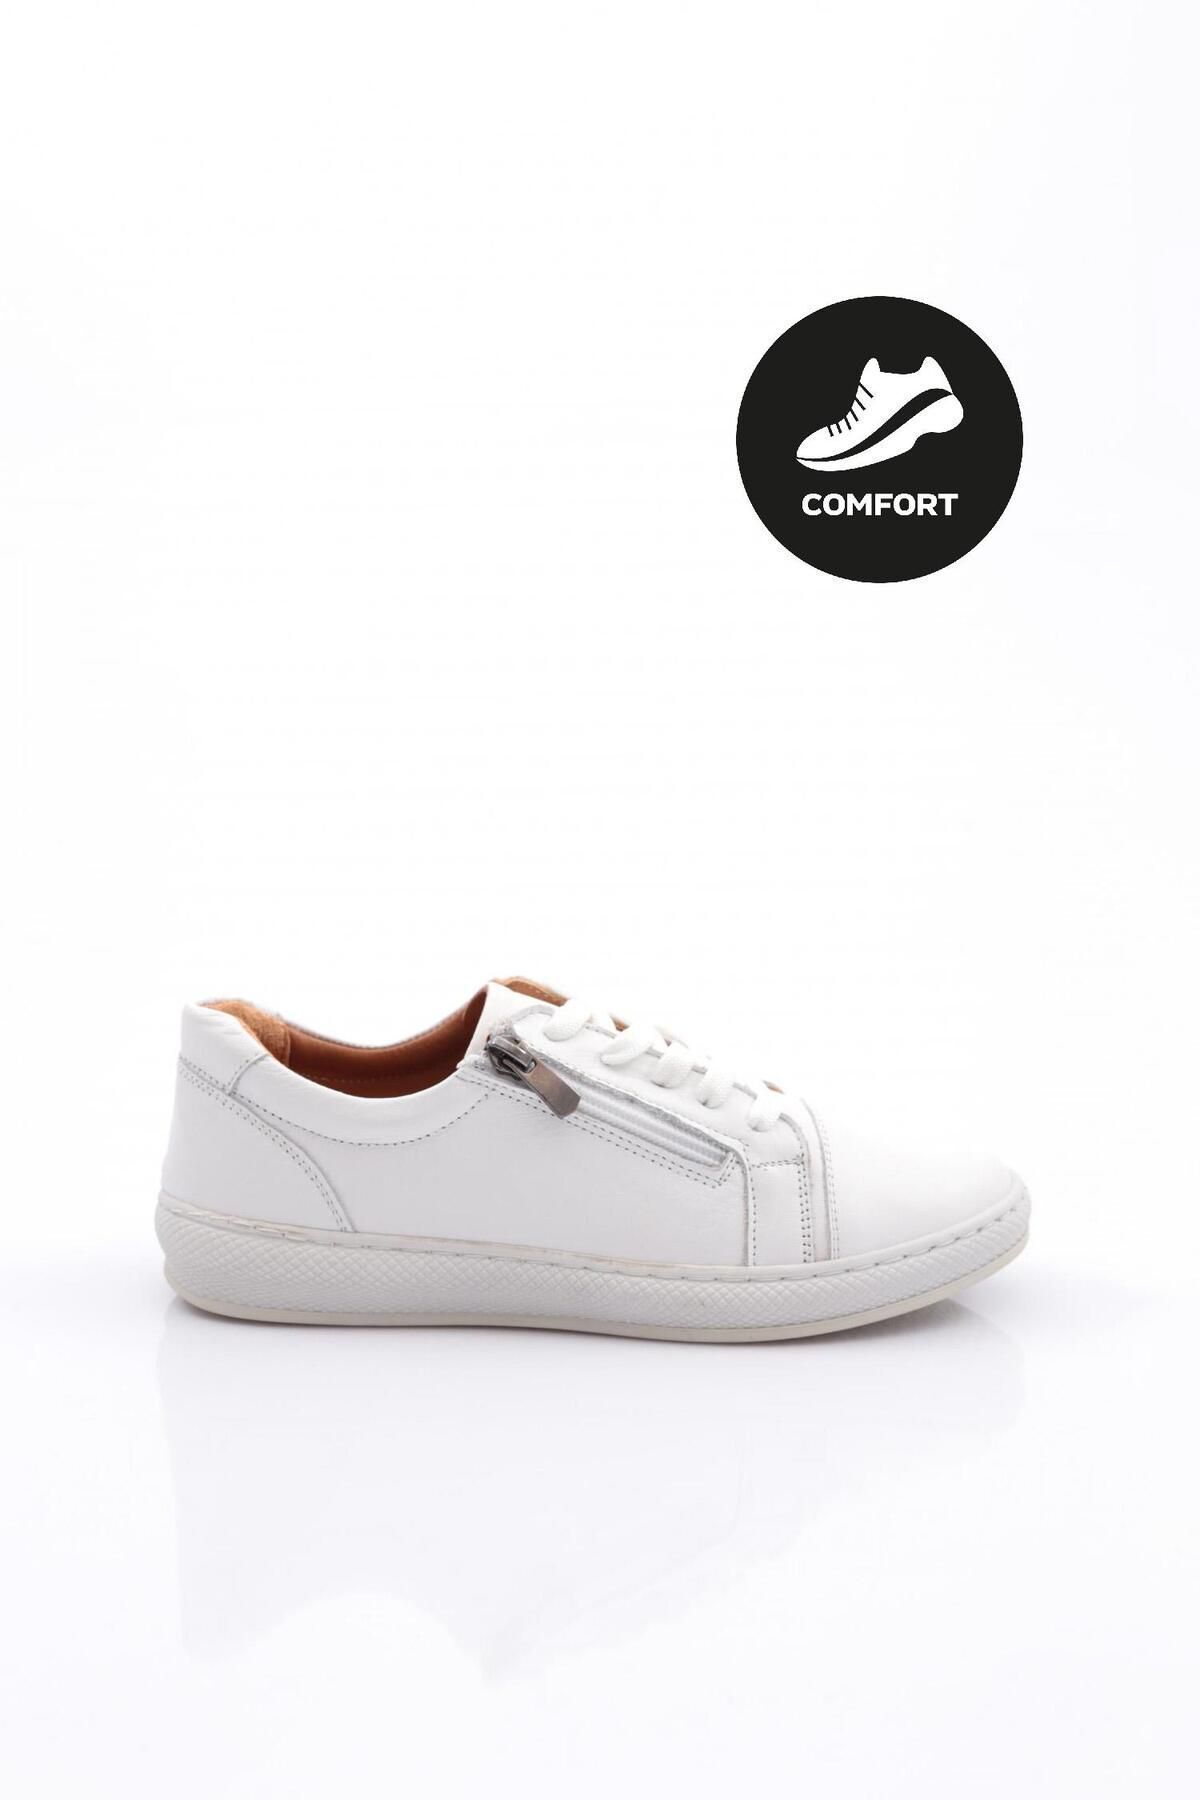 Dgn 2014-1-23y Kadın Bağcıklı Yanı Fermuar Detaylı Comfort Ayakkabı Hakiki Deri Beyaz